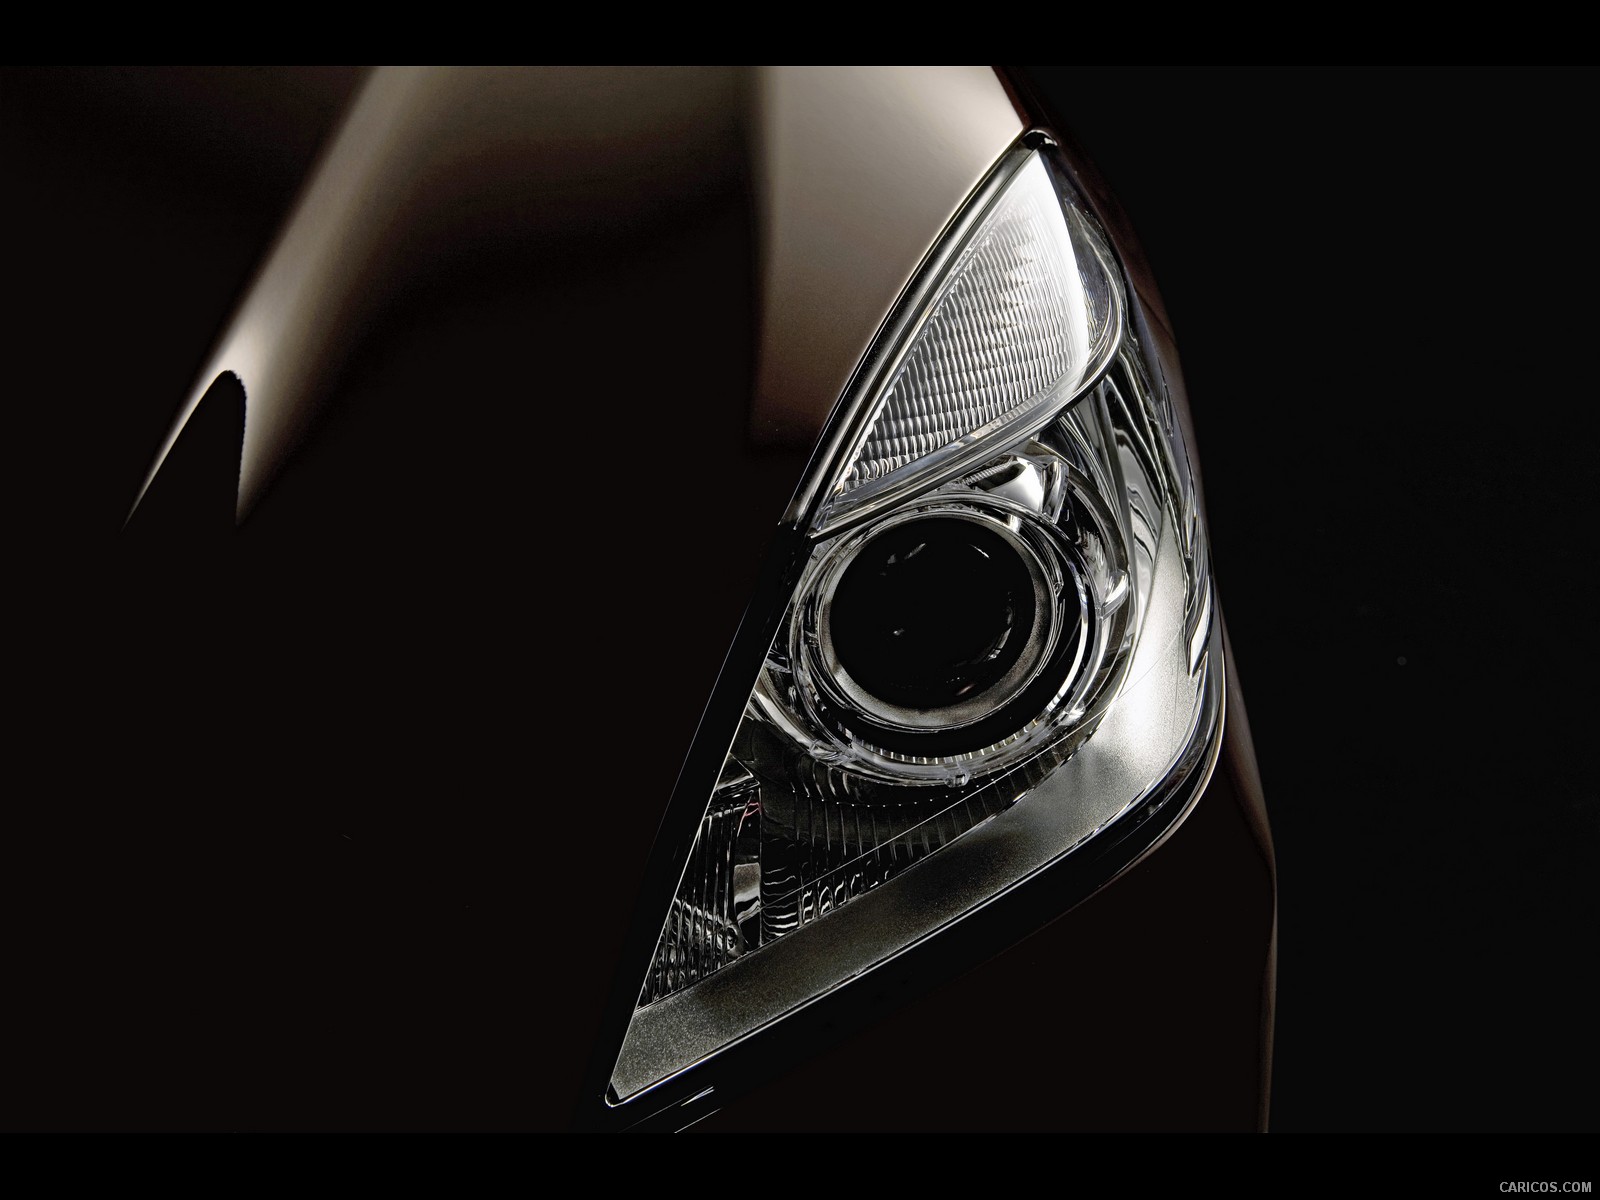 2010 Mercedes-Benz E-Class Sedan - Headlights - , #173 of 261